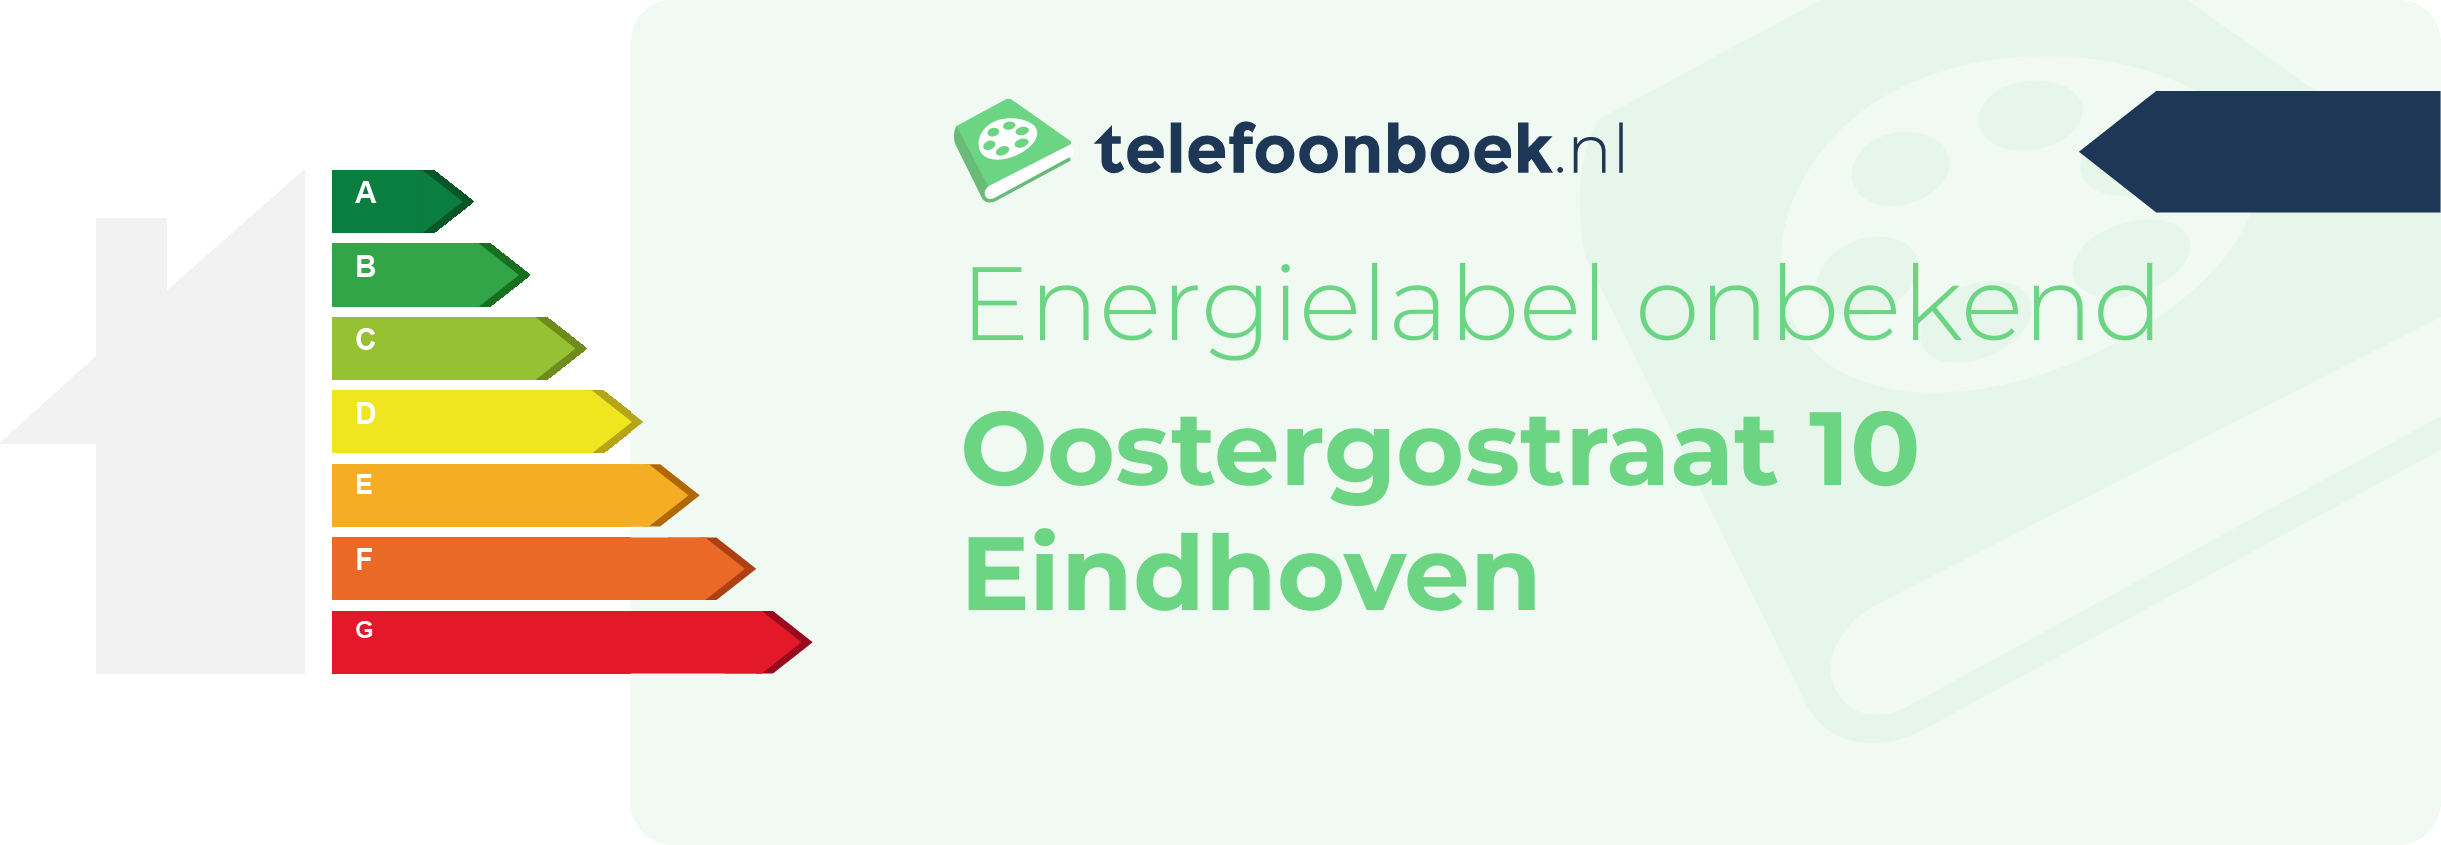 Energielabel Oostergostraat 10 Eindhoven